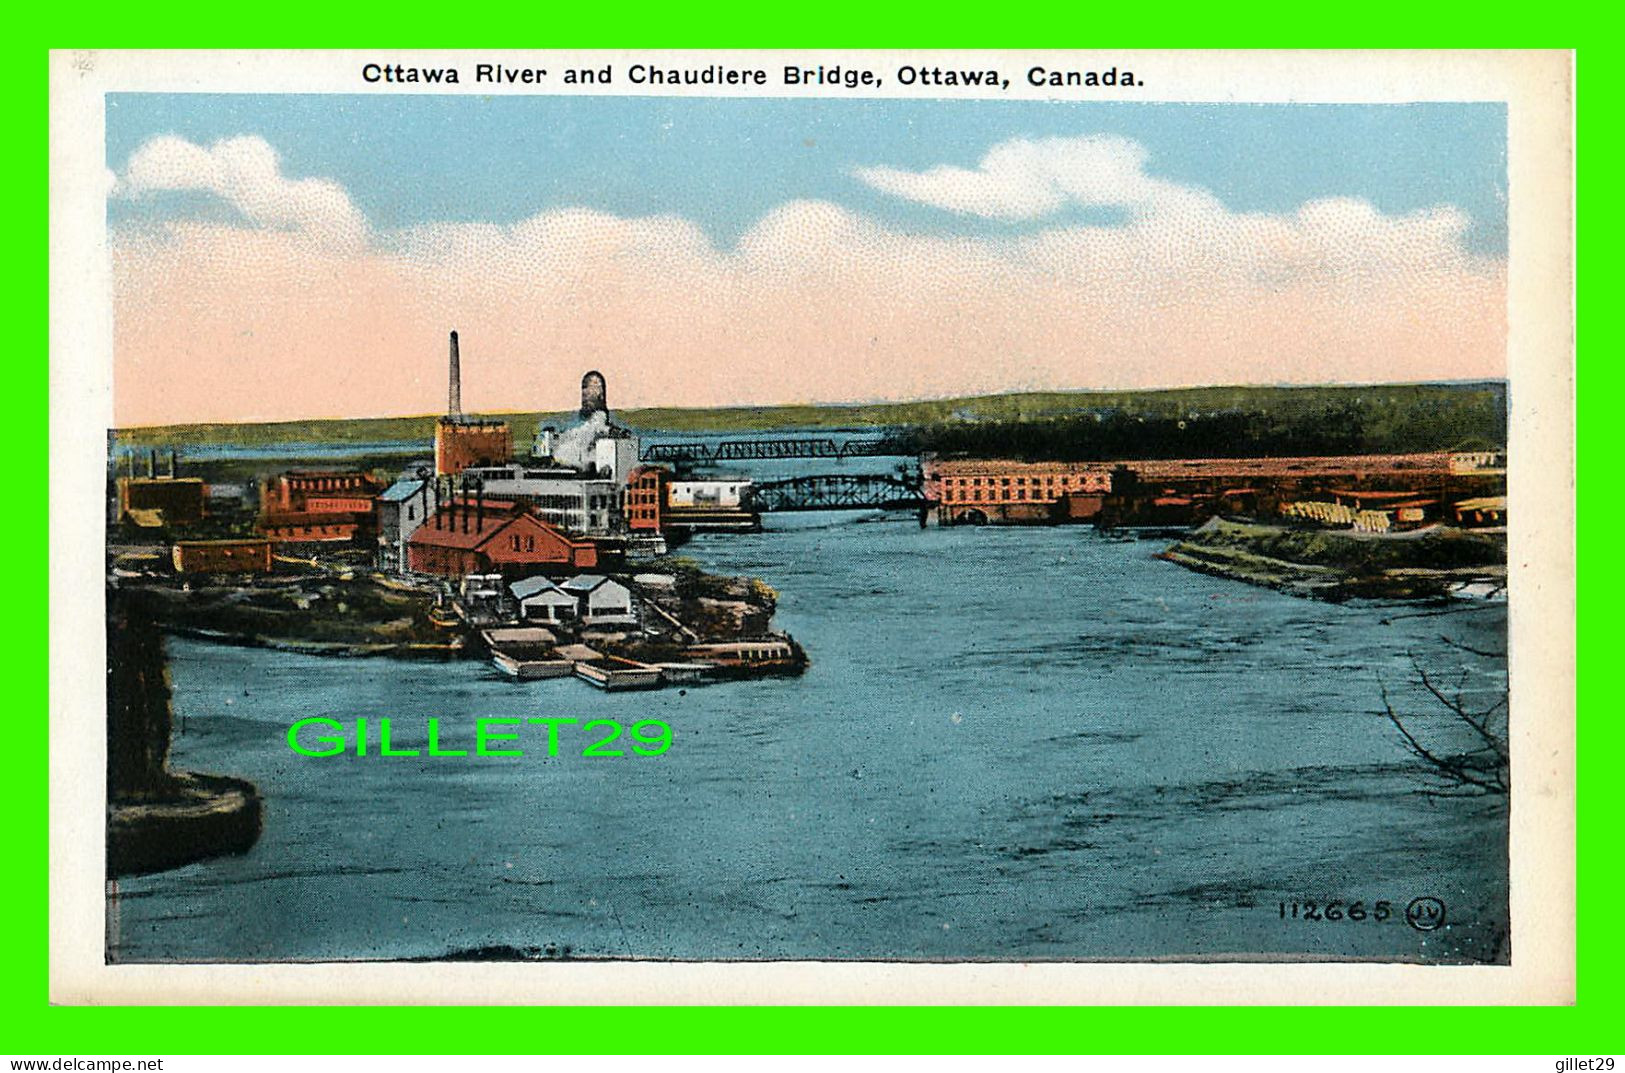 OTTAWA, ONTARIO - OTTAWA RIVER AND CHAUDIERE BRIDGE - THE VALENTINE & SONS UNITED PUB CO - - Ottawa